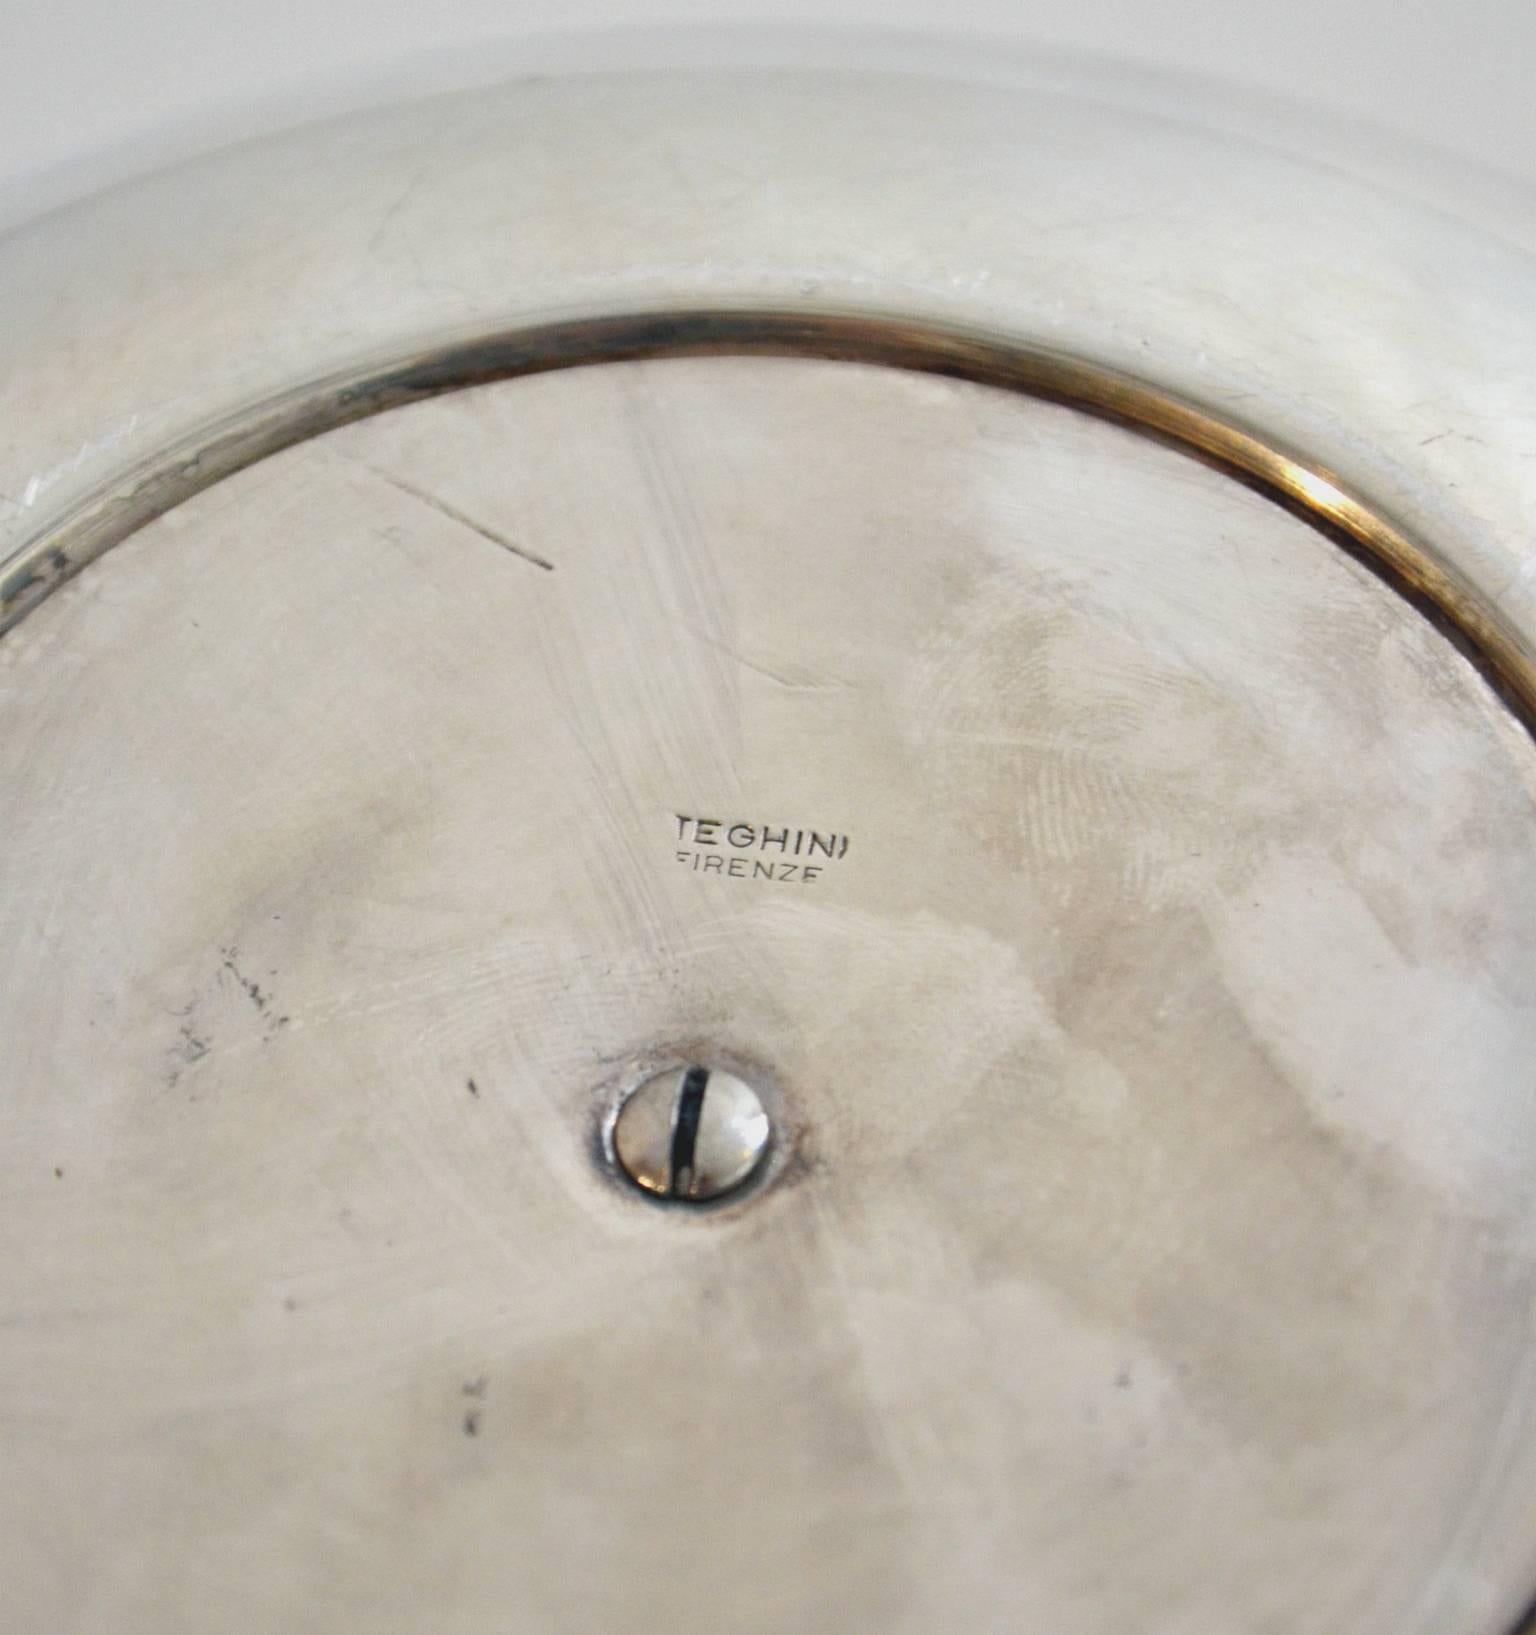 Italian Apple Shaped Ice Bucket by Teghini Firenze